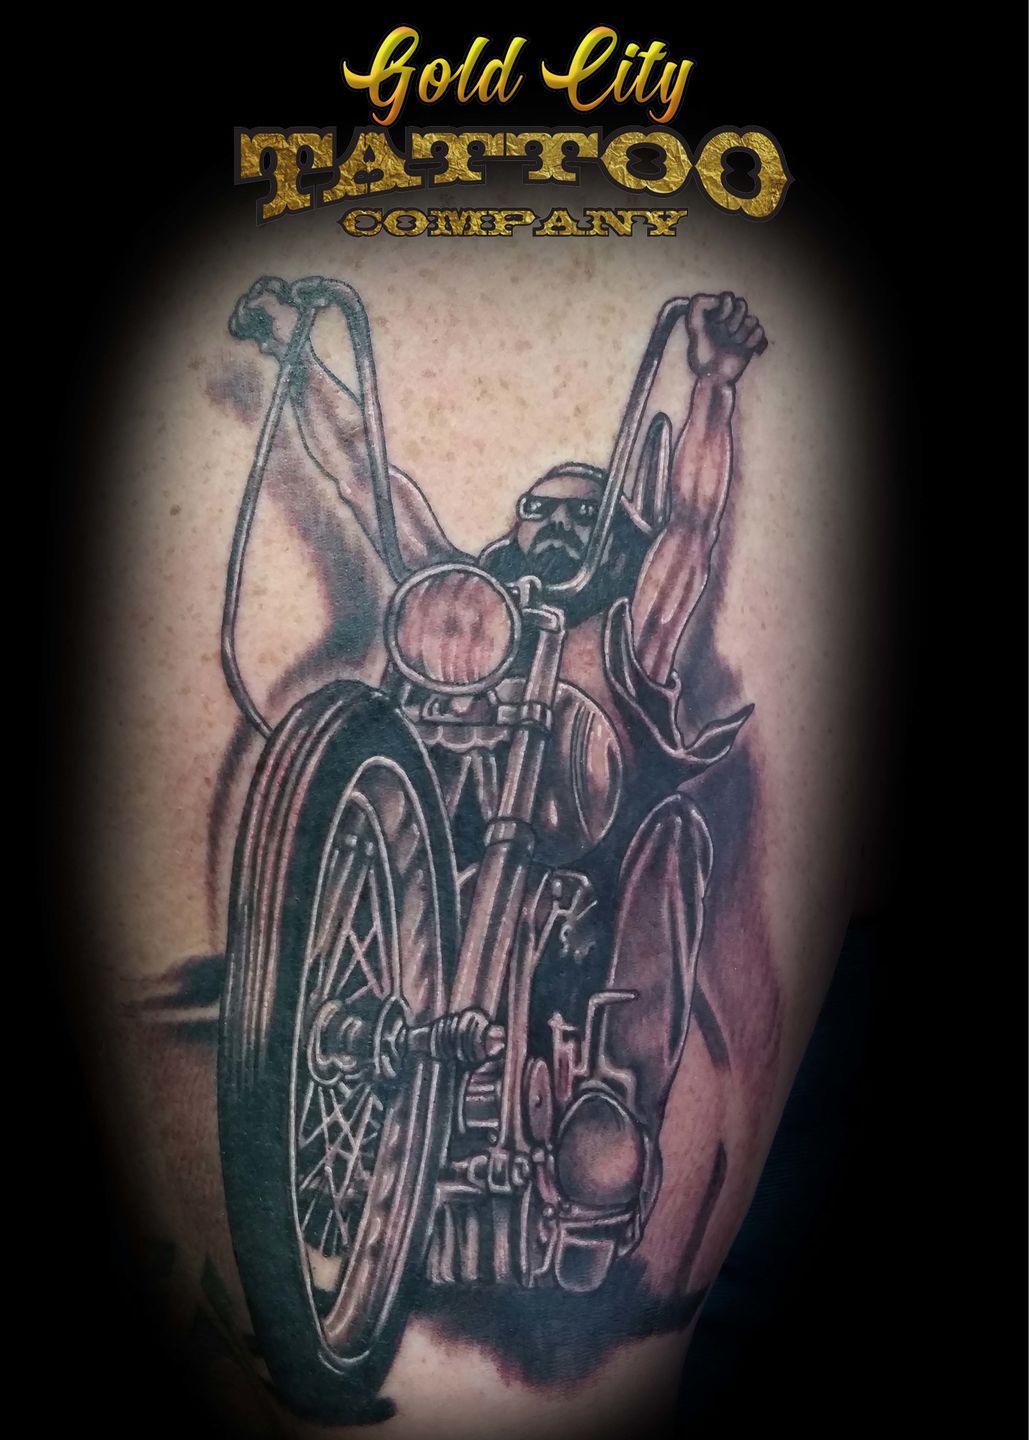 Chopper City Tattoos  Tattoo Studio  Tattoodo